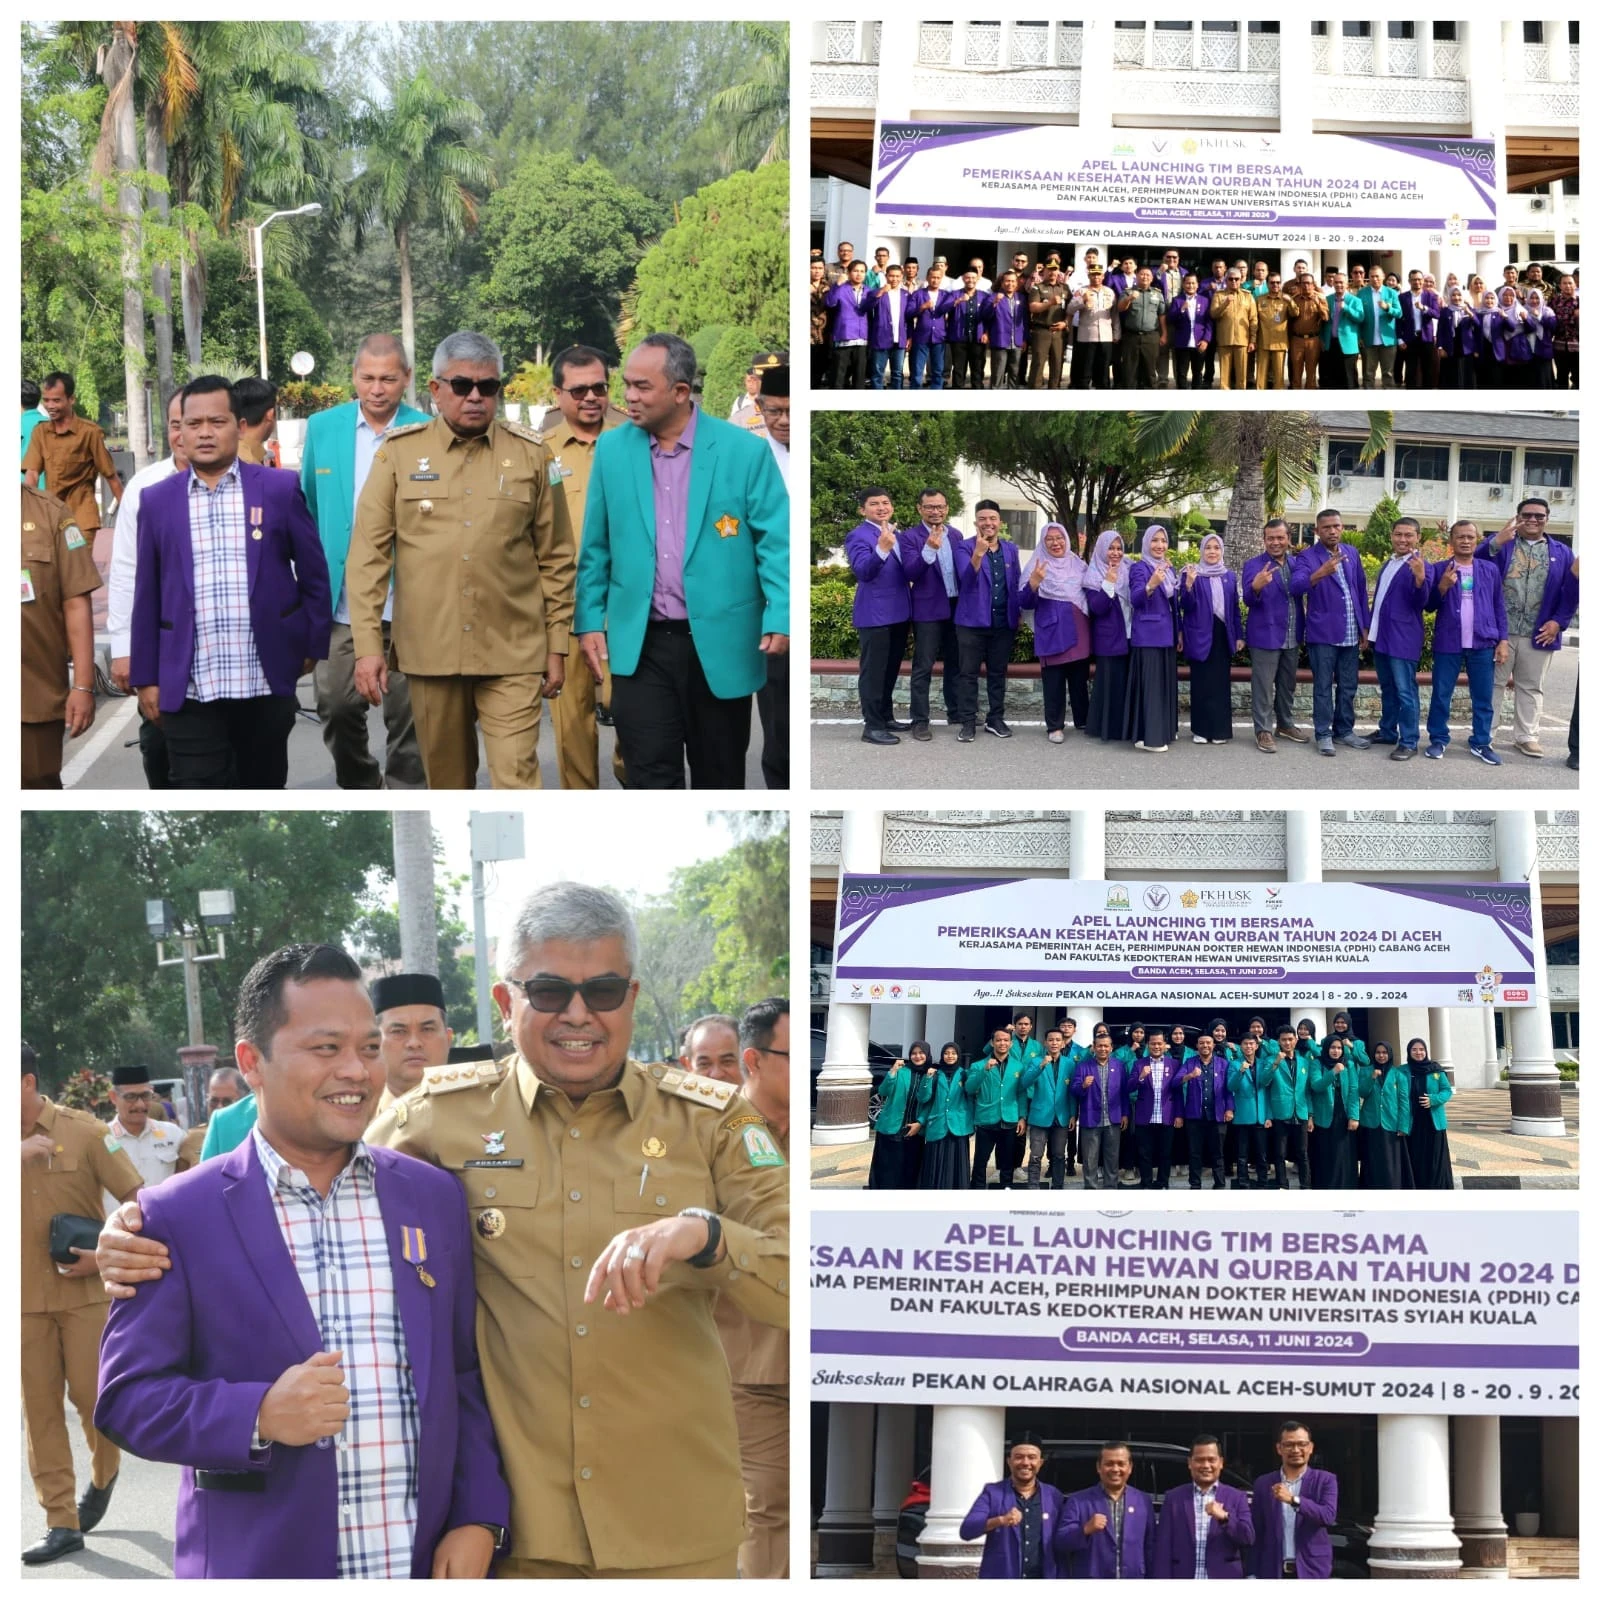 Apel Launching Tim Bersama Pemeriksaan Hewan Qurban Aceh Tahun 2024.